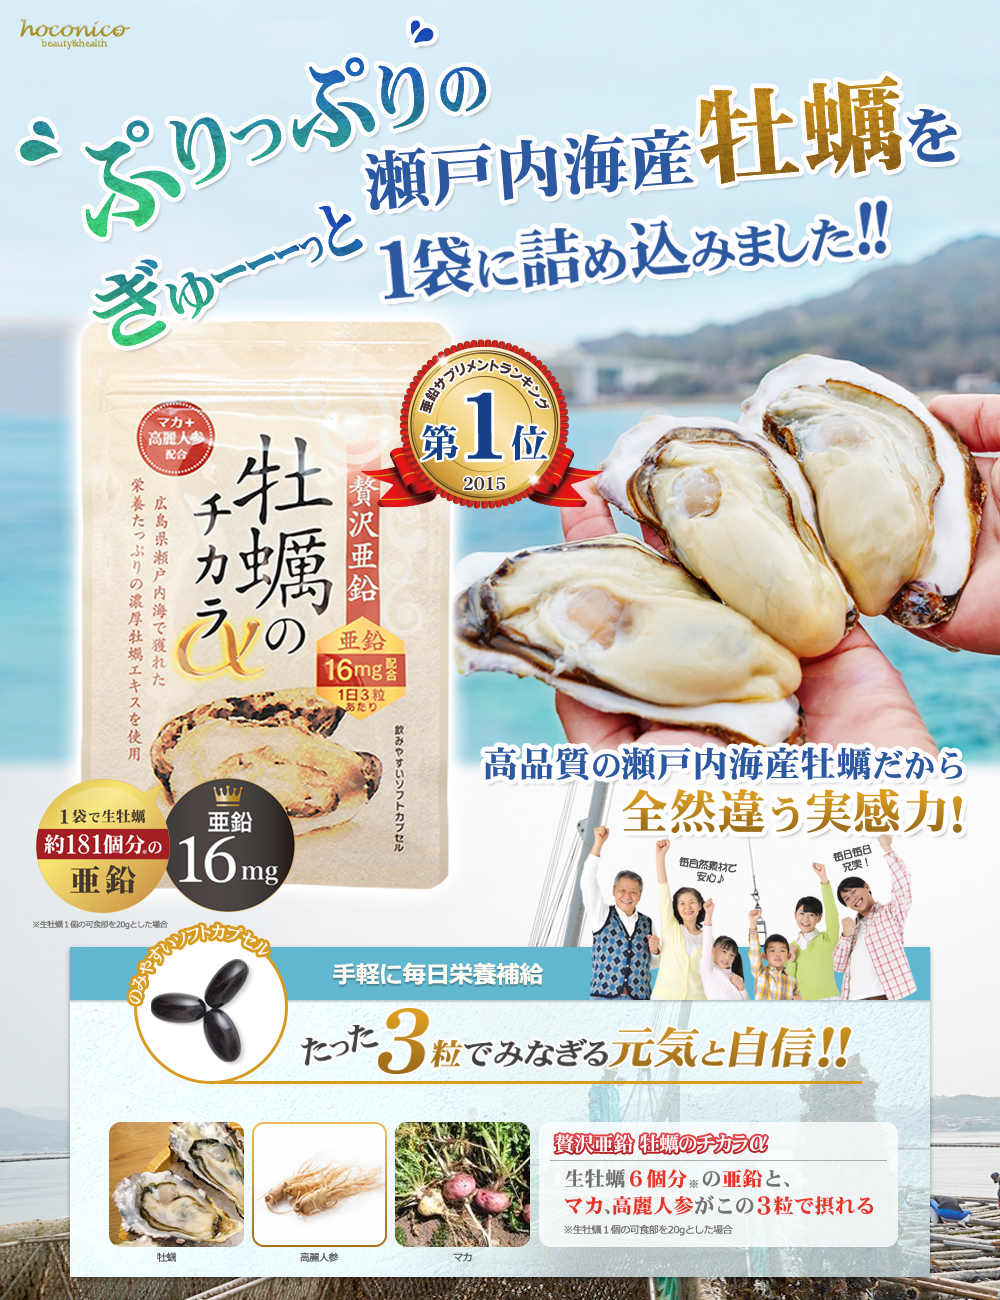 広島県瀬戸内海産のぷりぷり牡蠣を凝縮しました！一袋で生牡蠣約181個分の亜鉛をたっぷり摂れる贅沢な亜鉛サプリです！